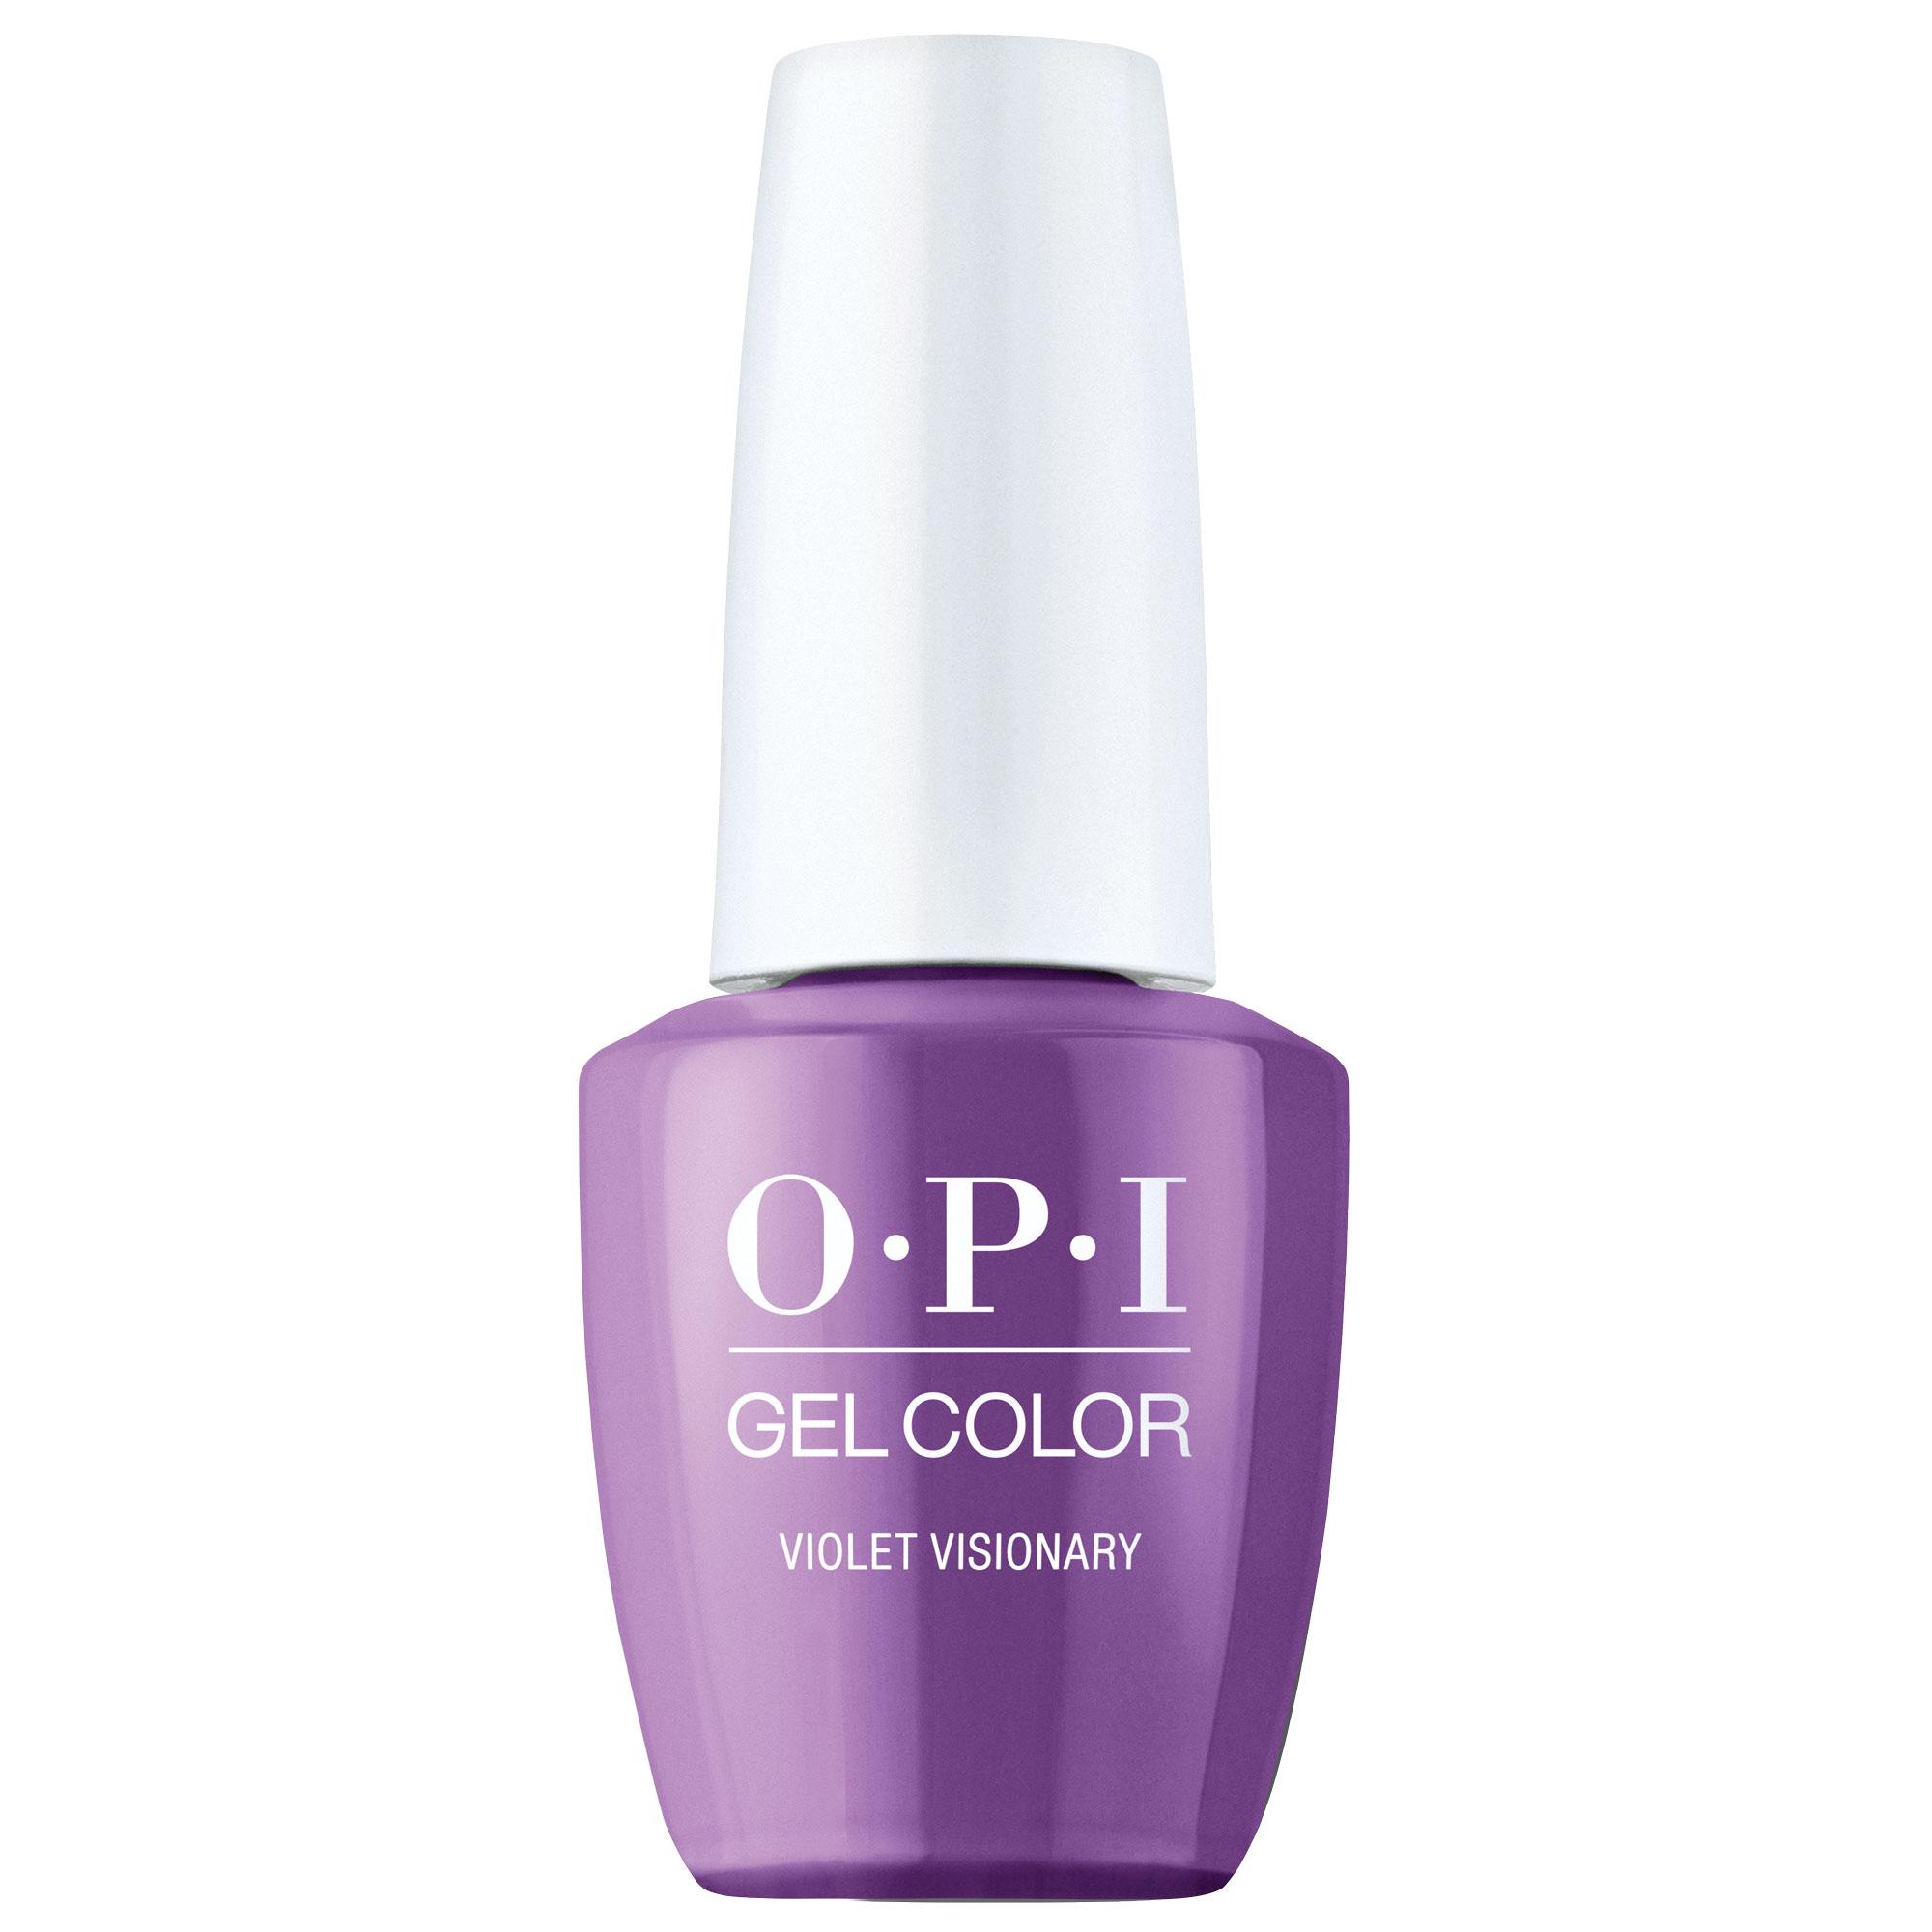 OPI Gel Color 360 - Violet Visionary